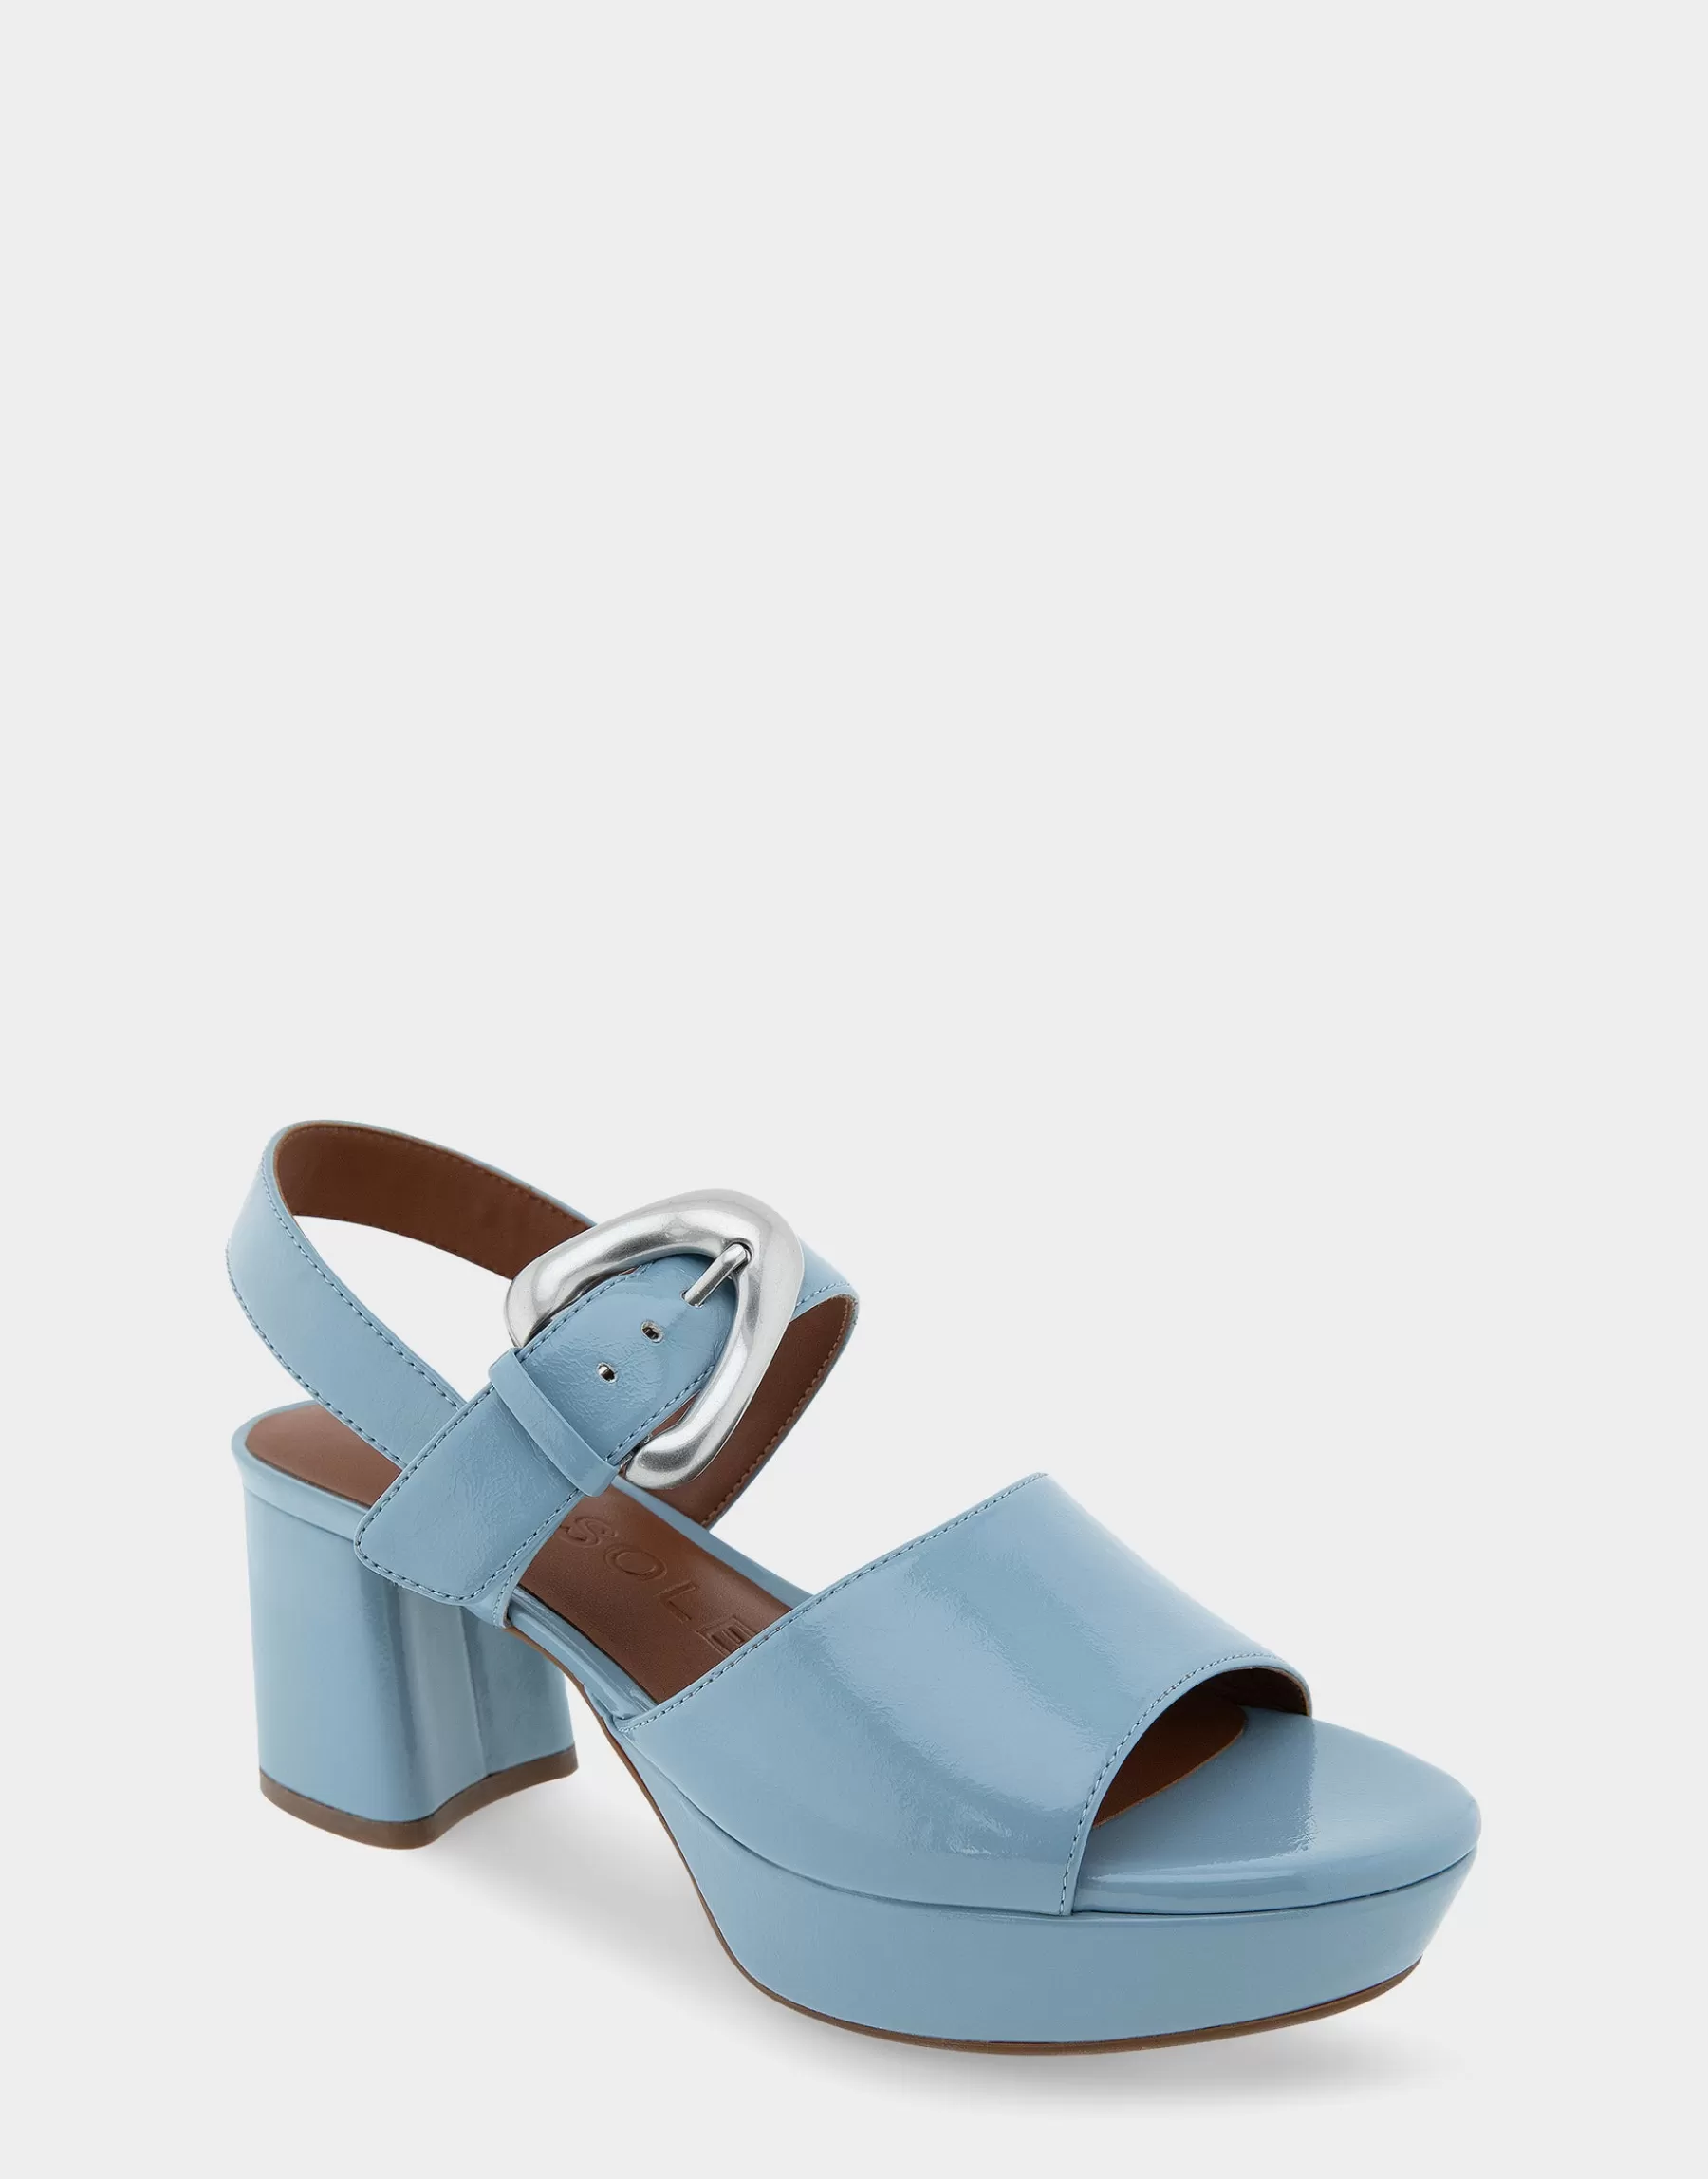 Aerosoles Comfortable Women's Quarter Strap Platform Sandal in Dusty Blue Patent Faux Leather Fashion